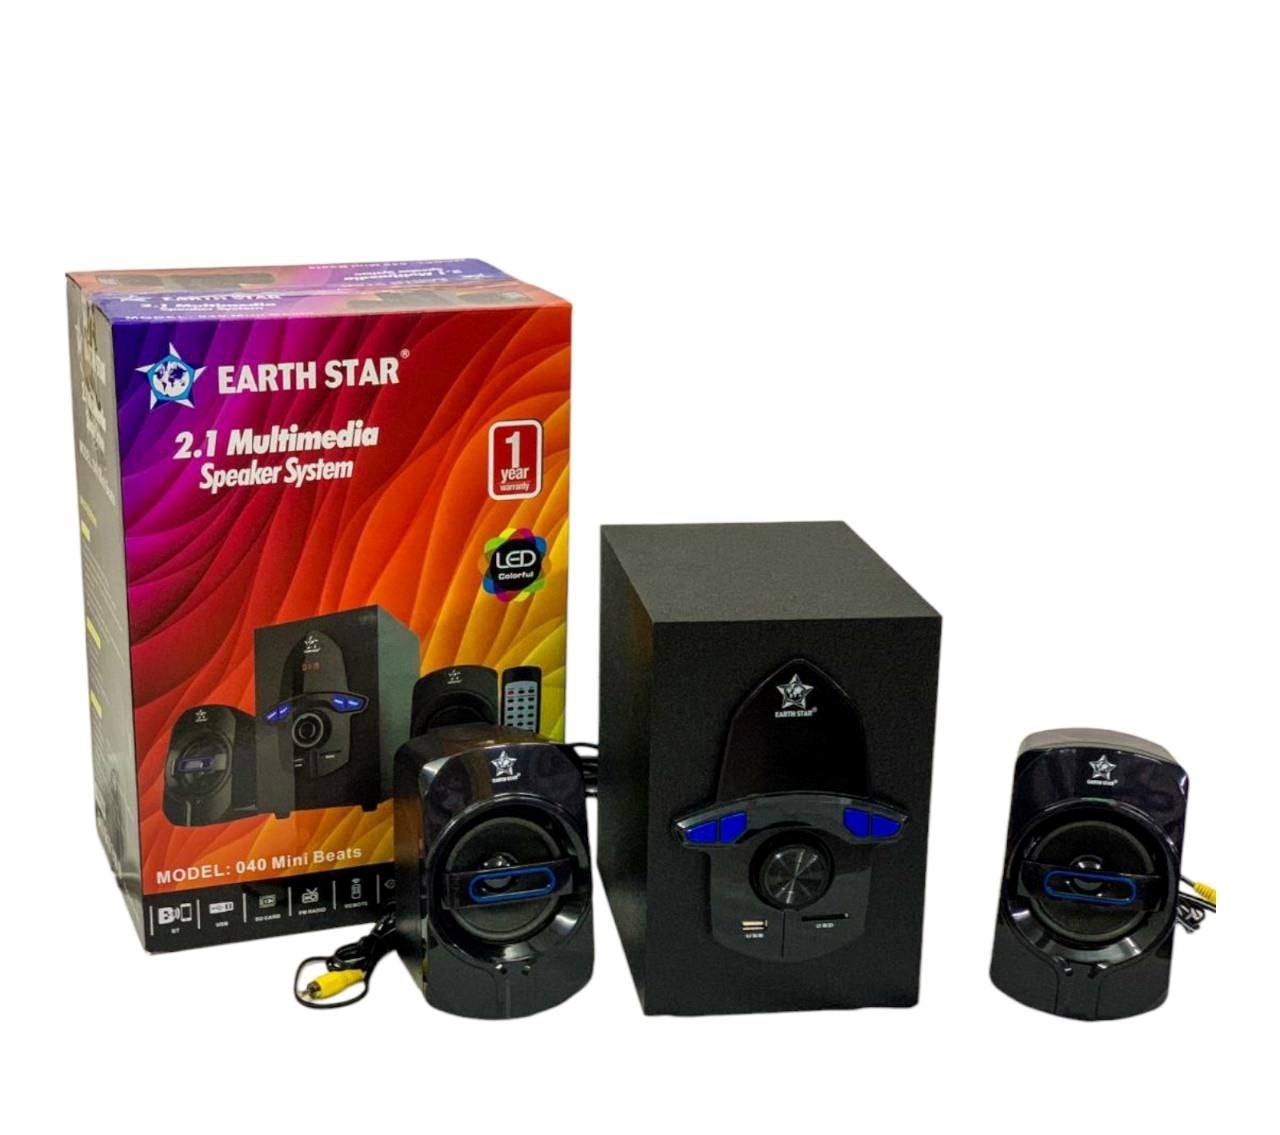 Earth Star 2.1 Multimedia Speaker System